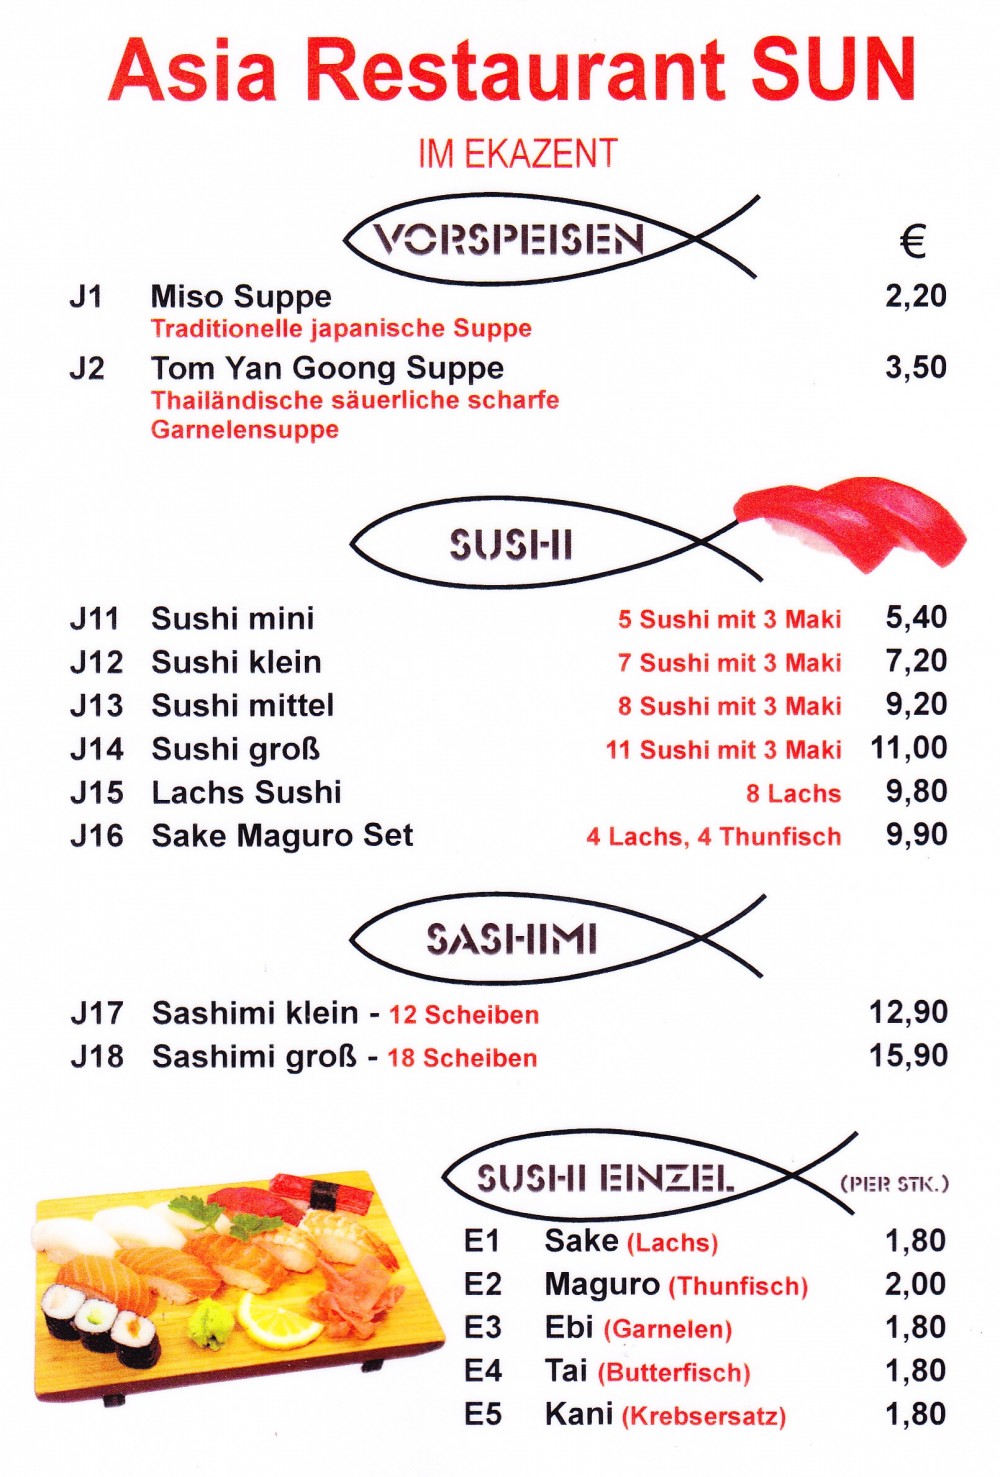 Asia Restaurant Sun Sushi-Maki-Karte Seite 1 - Asia-Restaurant Sun - Wien